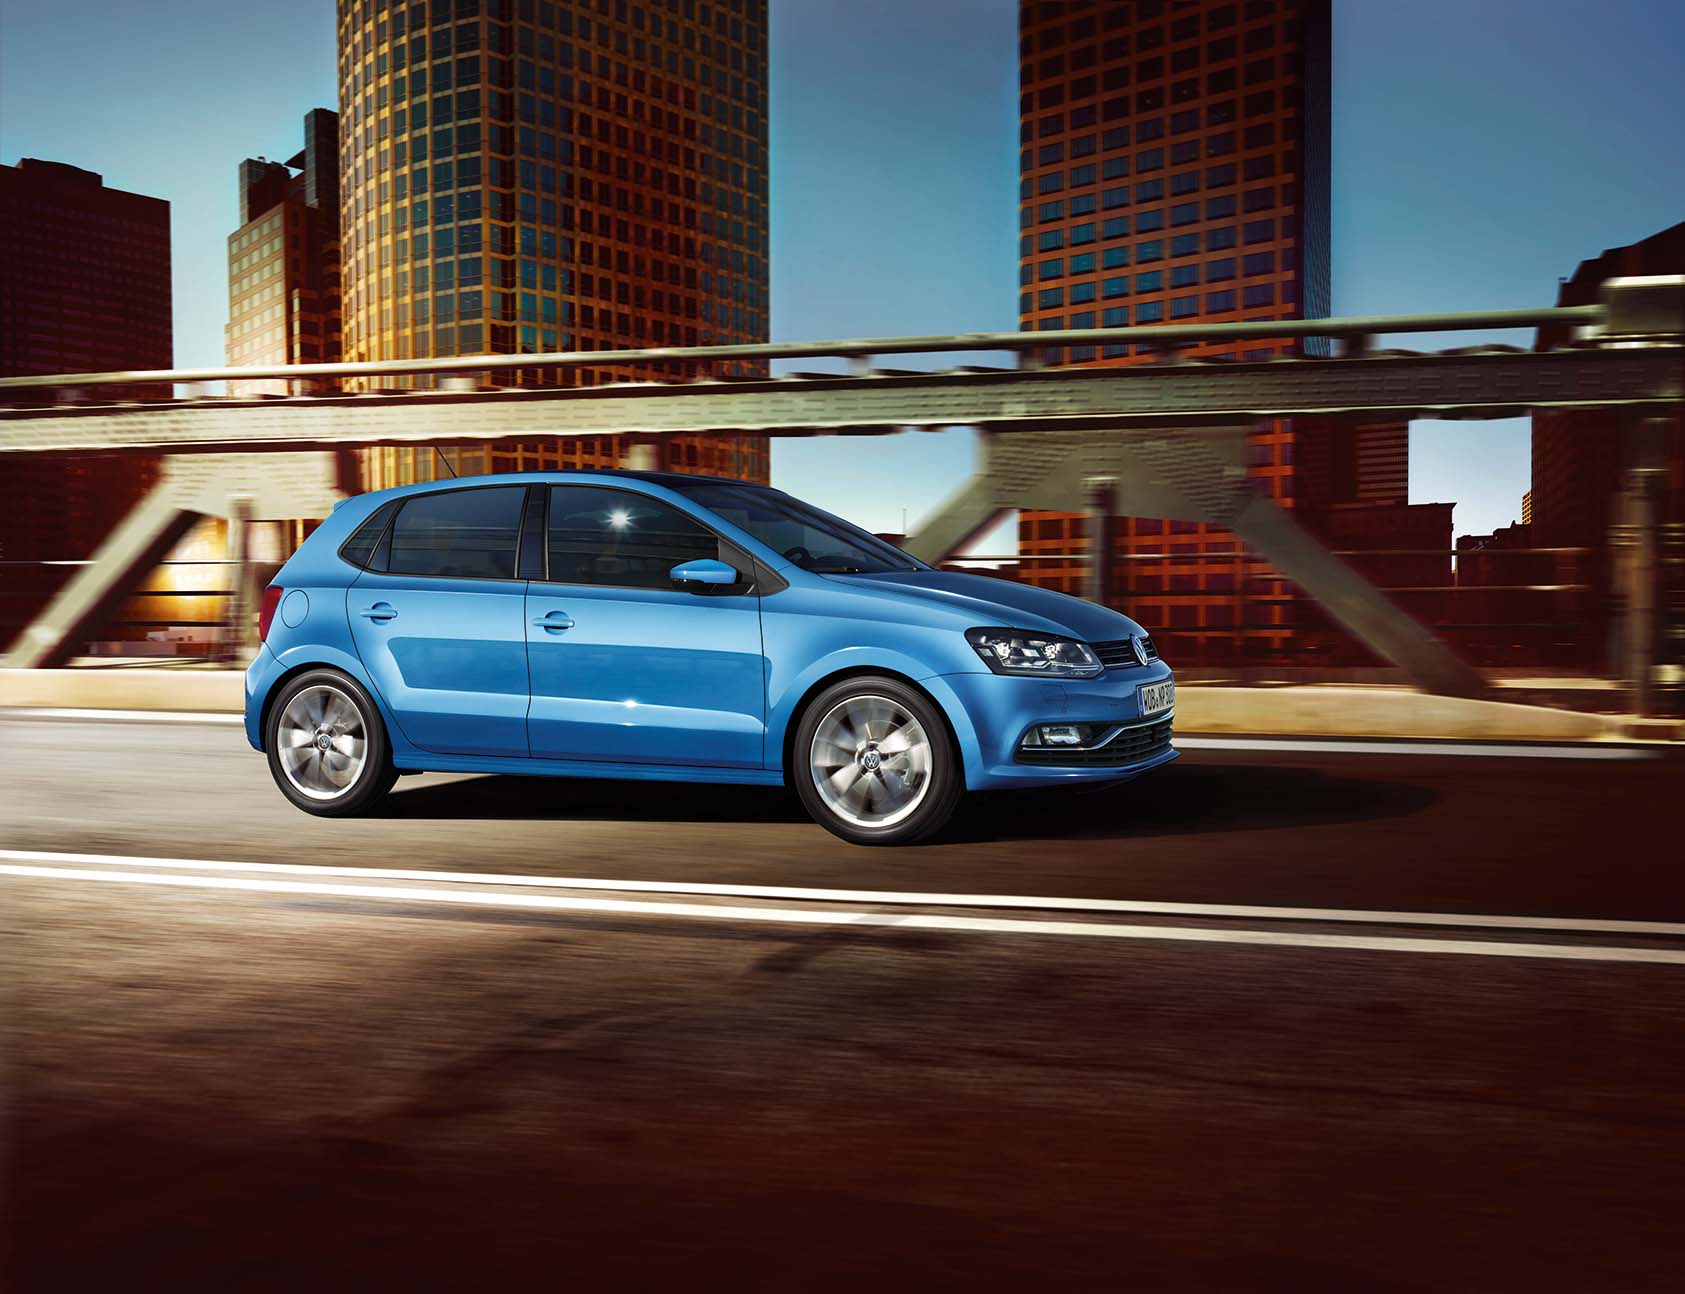 Satılık ikinci el Volkswagen Yeni Polo ekran görüntüsü